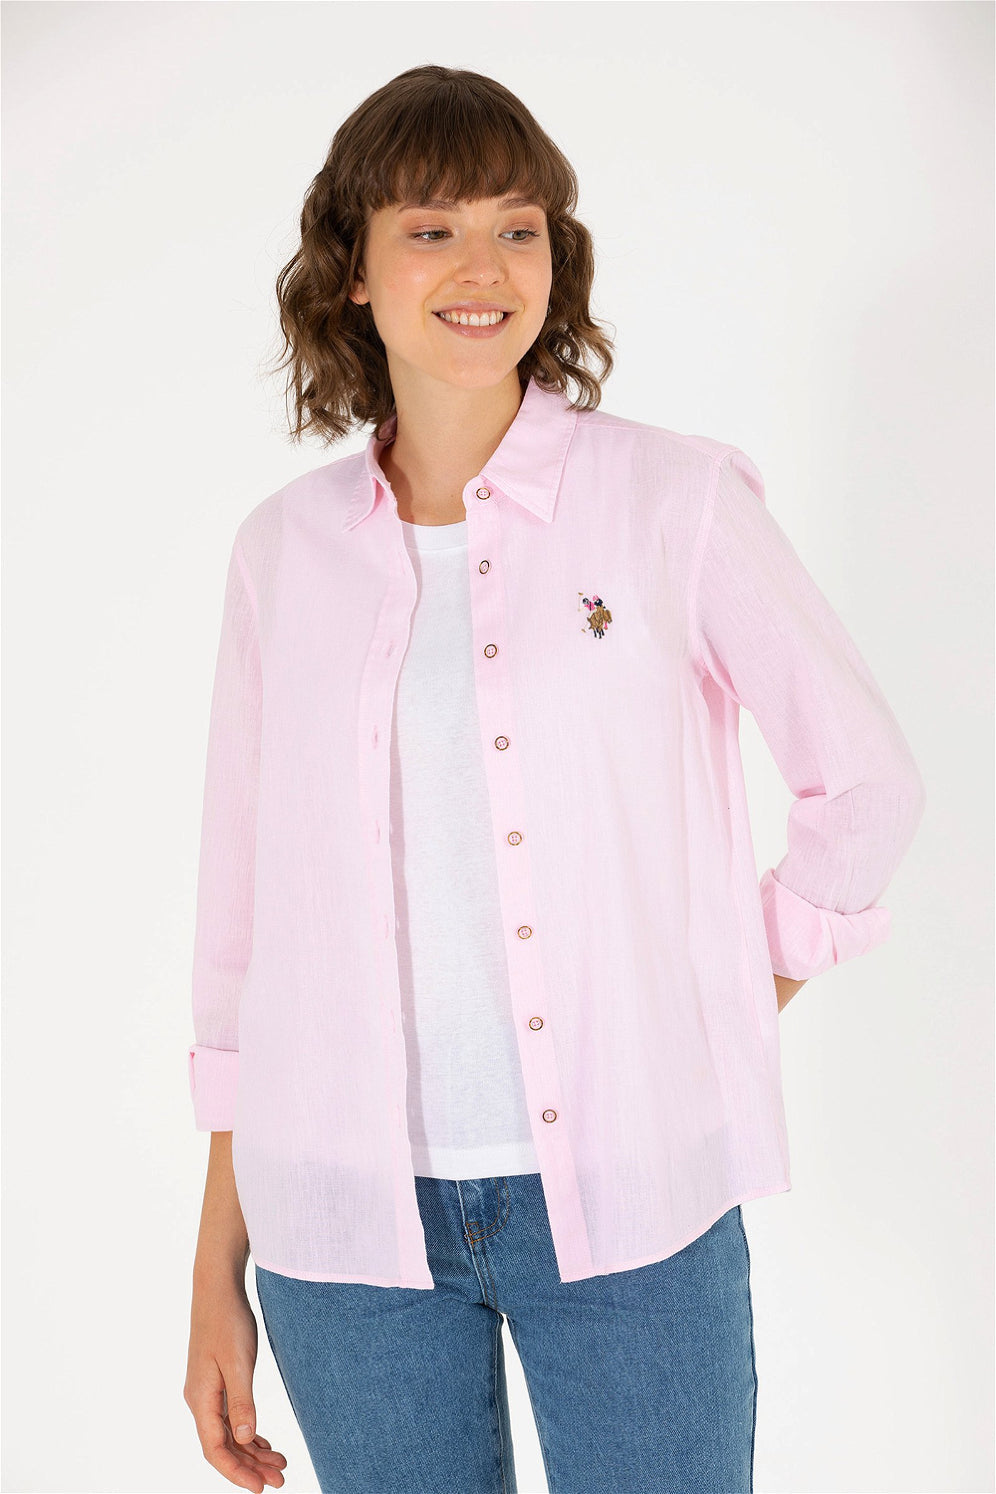 Light Pink Long Sleeve Shirt